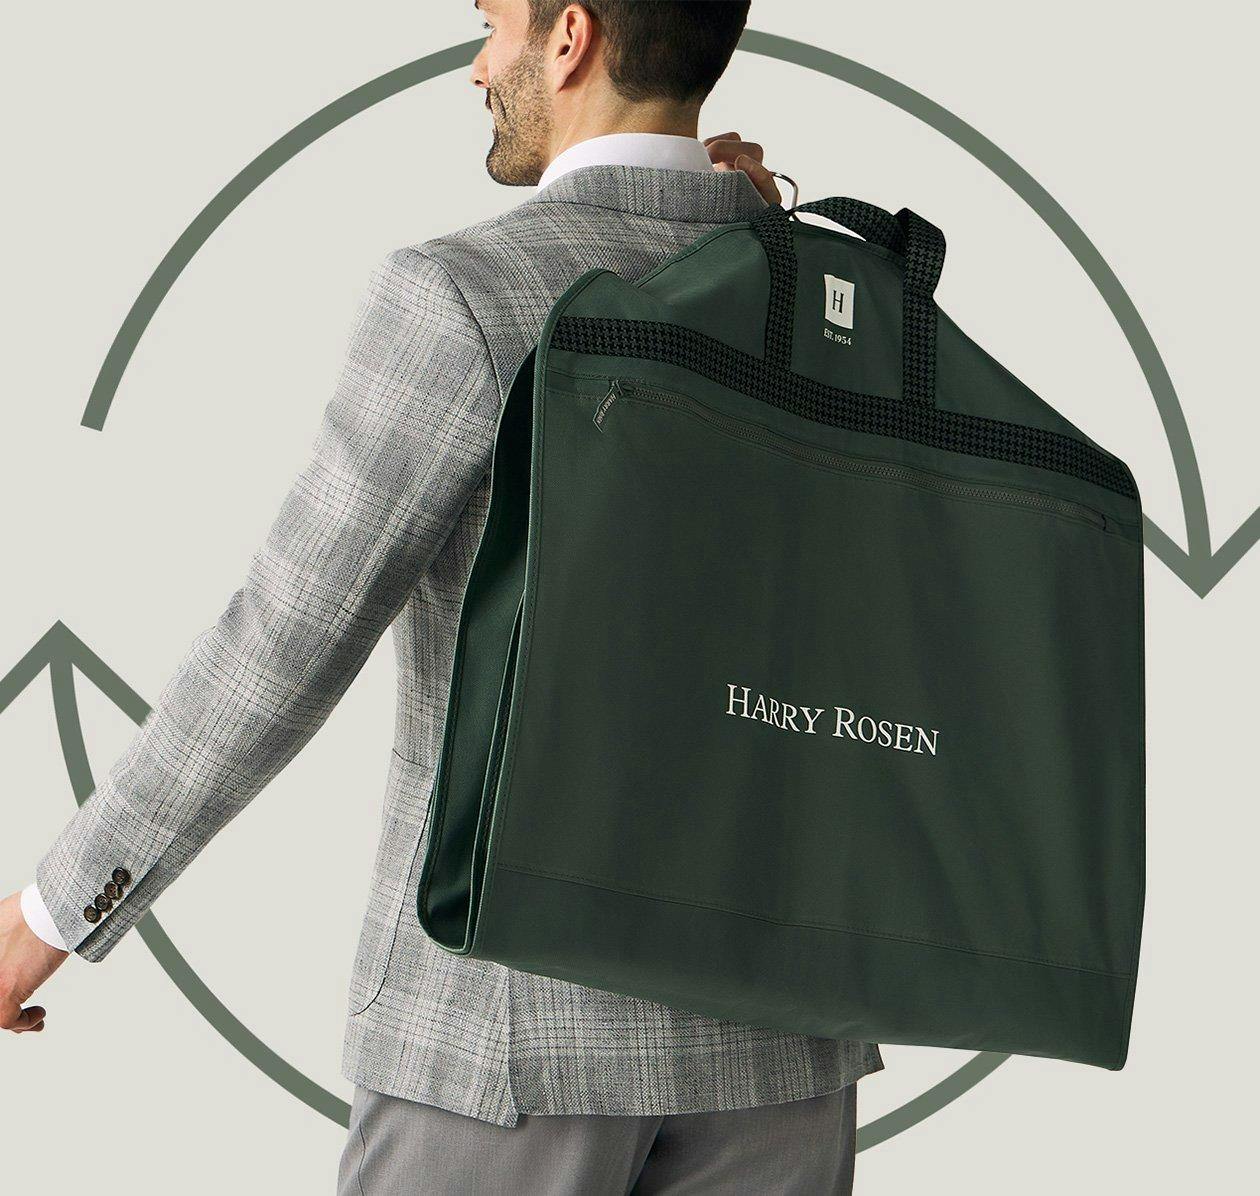 Un homme en costume portant un sac avec un logo Terracycle dessus